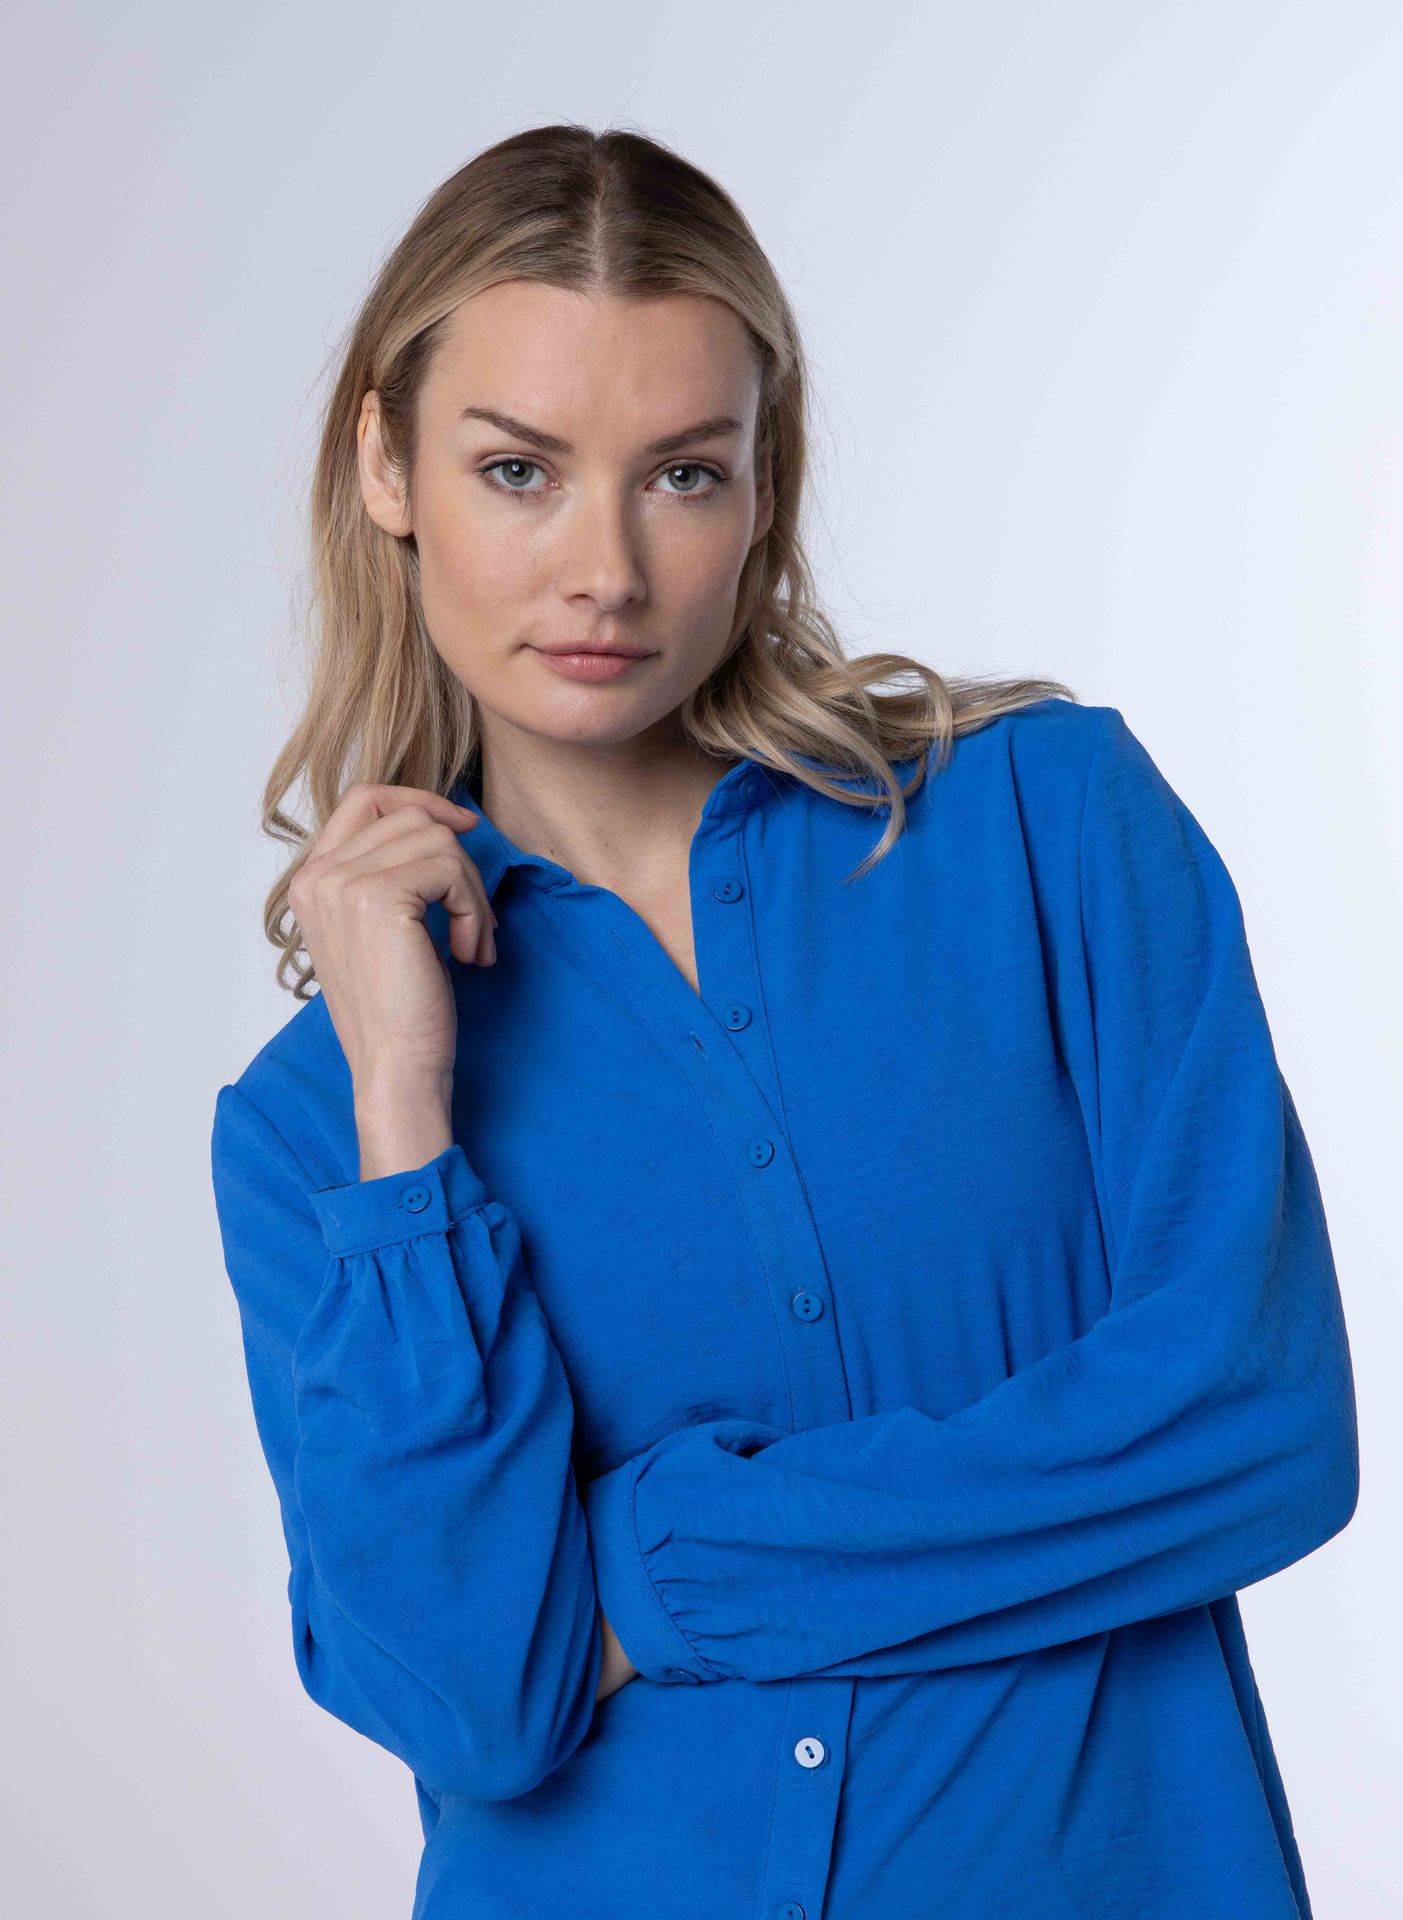 Norah Blauwe blouse met kraag cobalt 213114-468